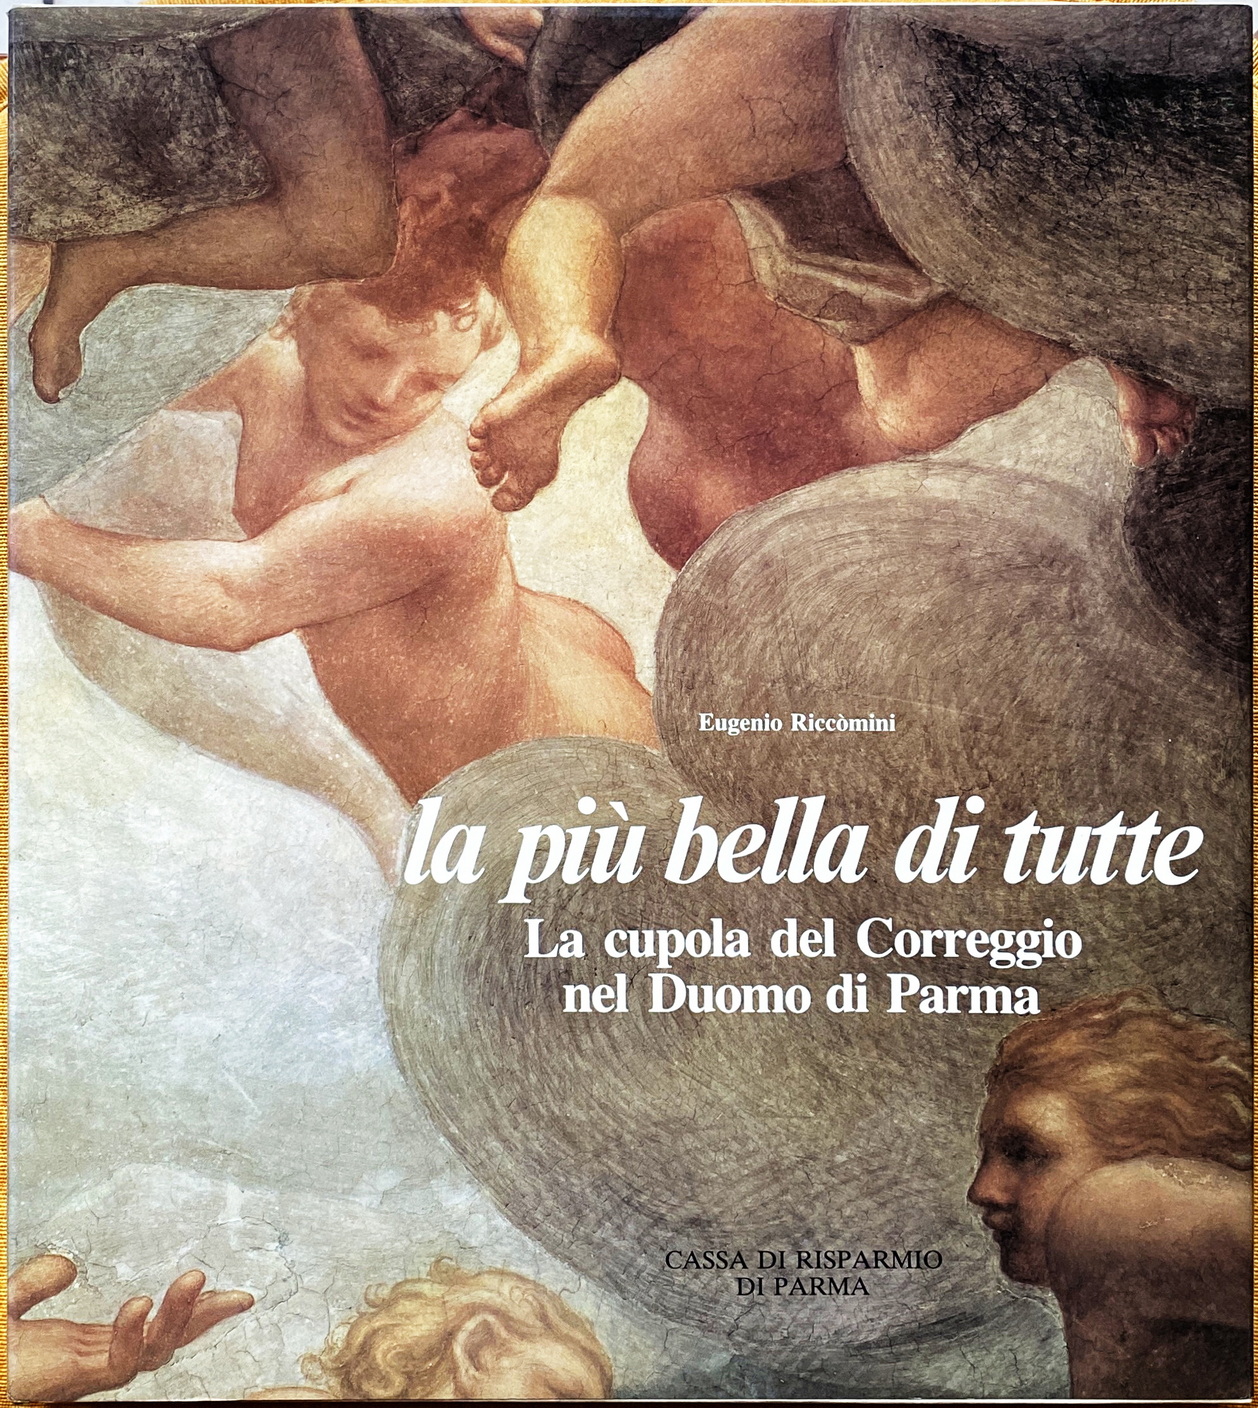 Eugenio Riccòmini, La più bella di tutte. La cupola del Correggio nel Duomo di Parma, Ed. Amilcare Pizzi, 1983